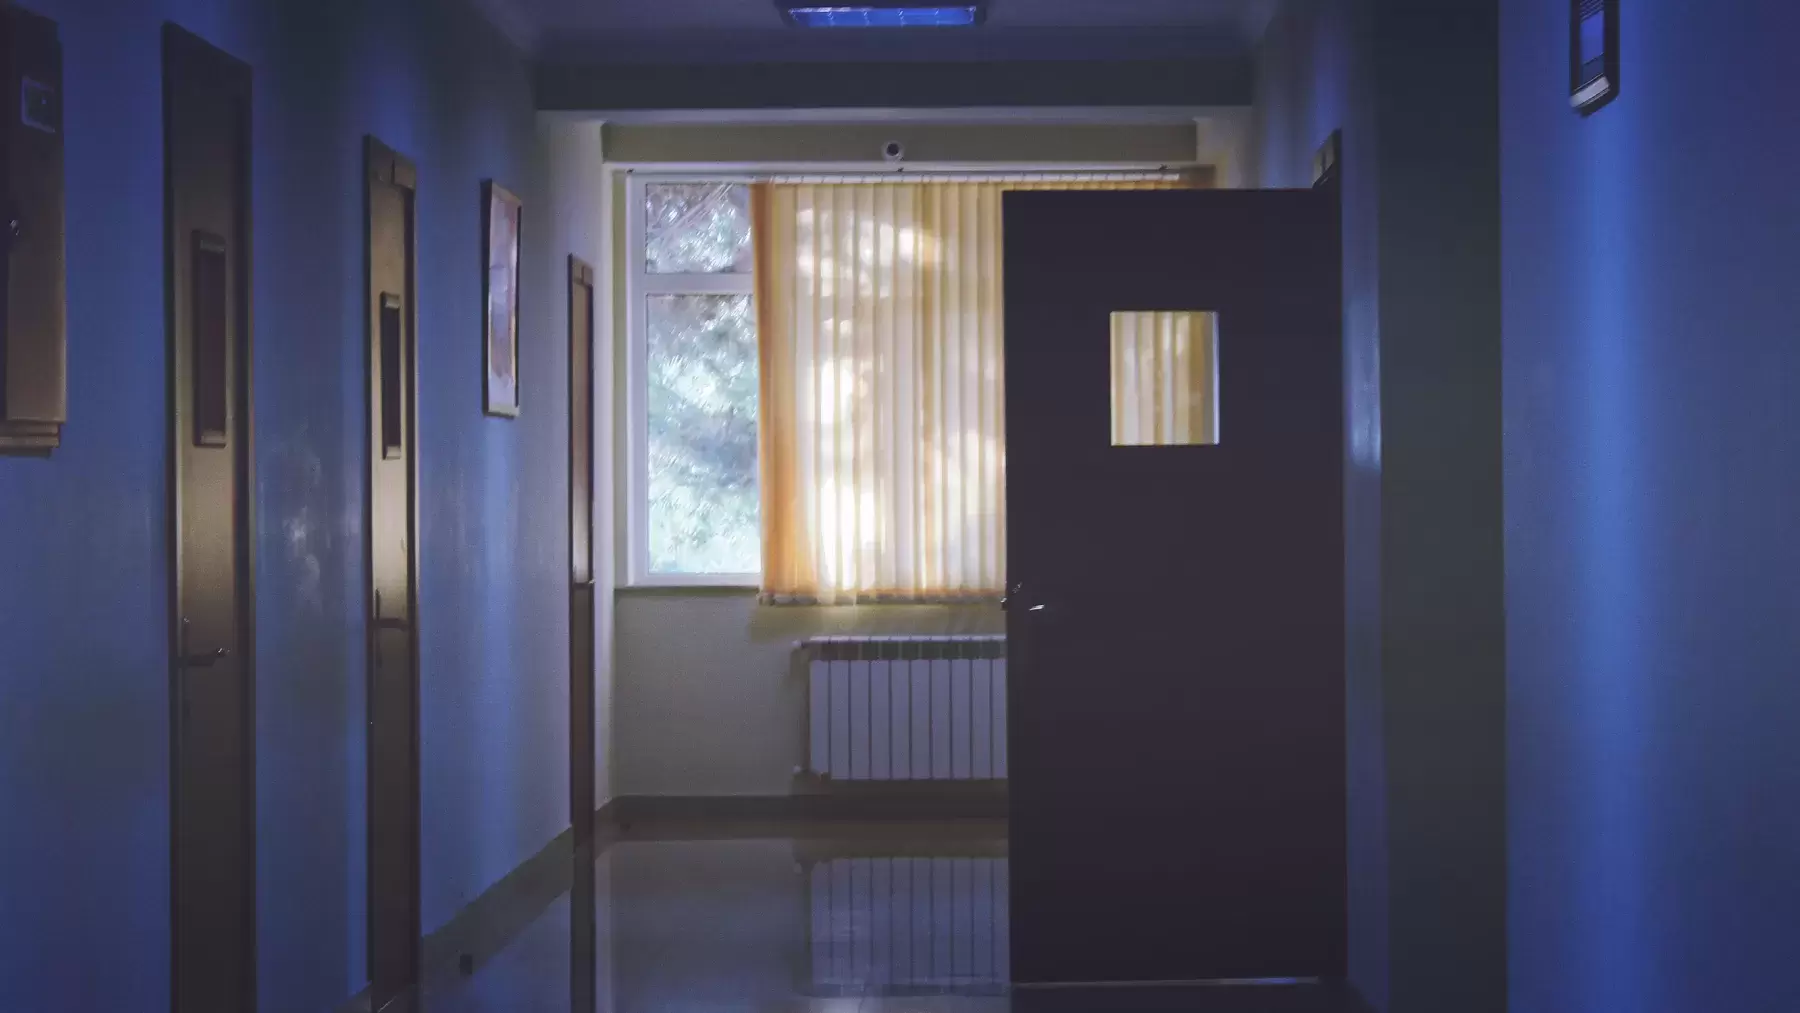 hospital hallway with one open door